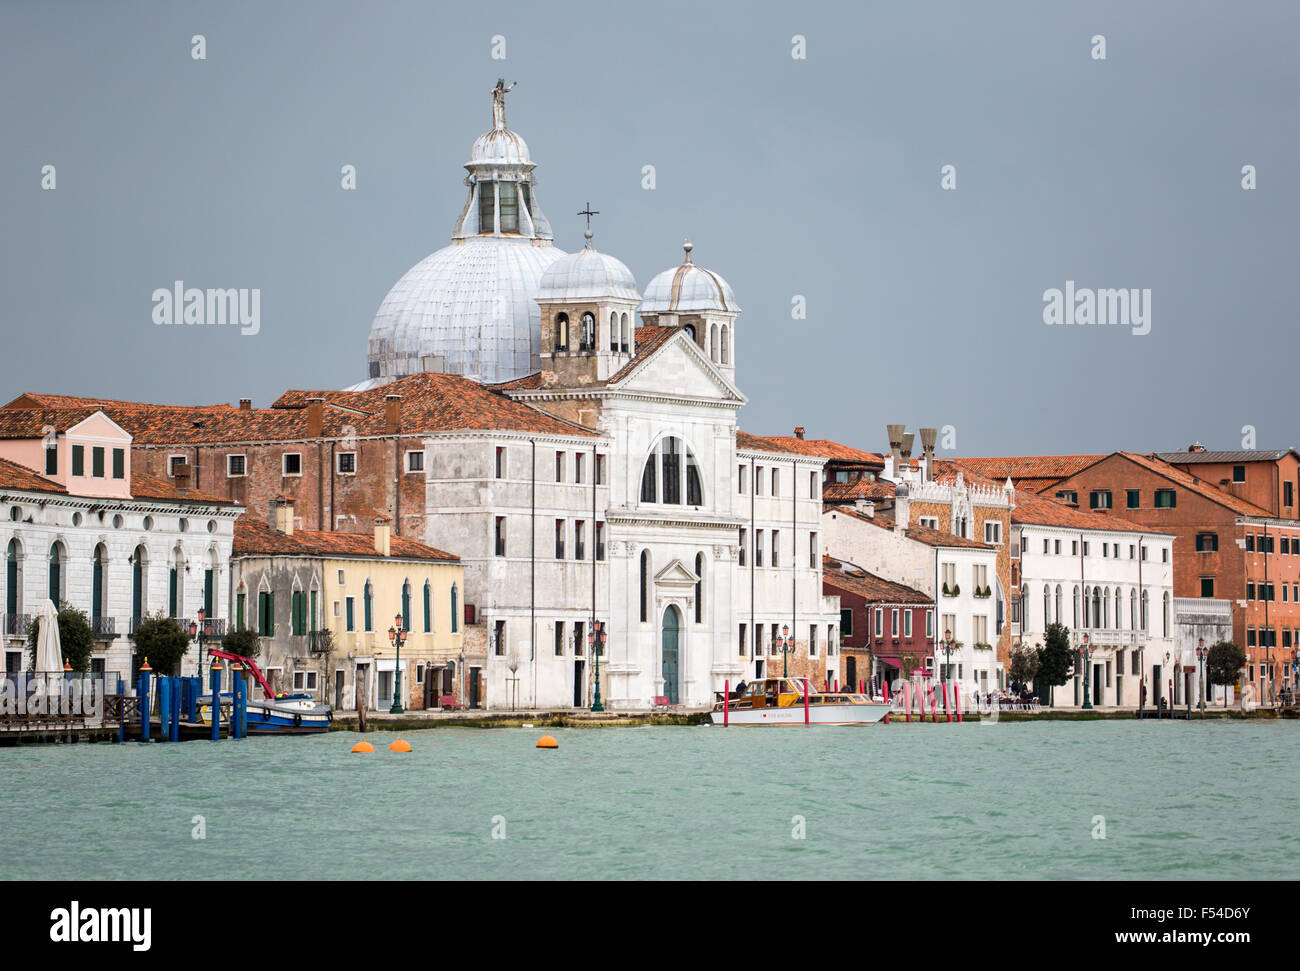 Santa Maria della Salute from the Litorale di Lido, Venice, Italy Stock Photo